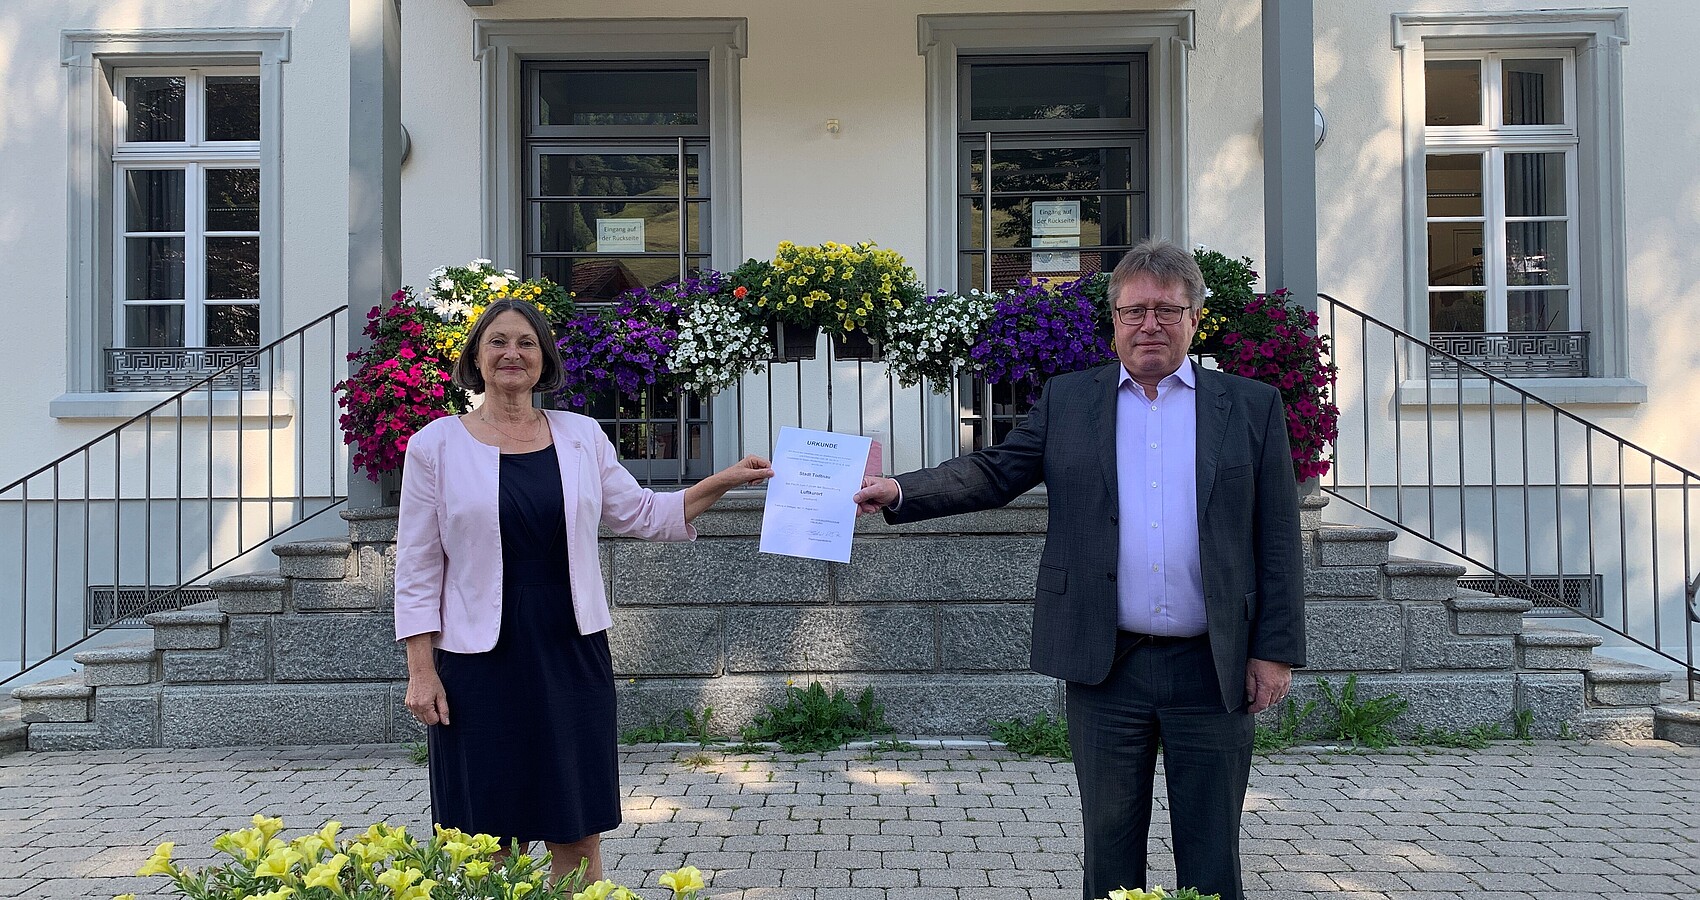 Regierungspräsidentin Bärbel Schäfer übergibt dem Bürgermeister der Stadt Todtnau die Urkunde zur Auszeichnung als Luftkurort